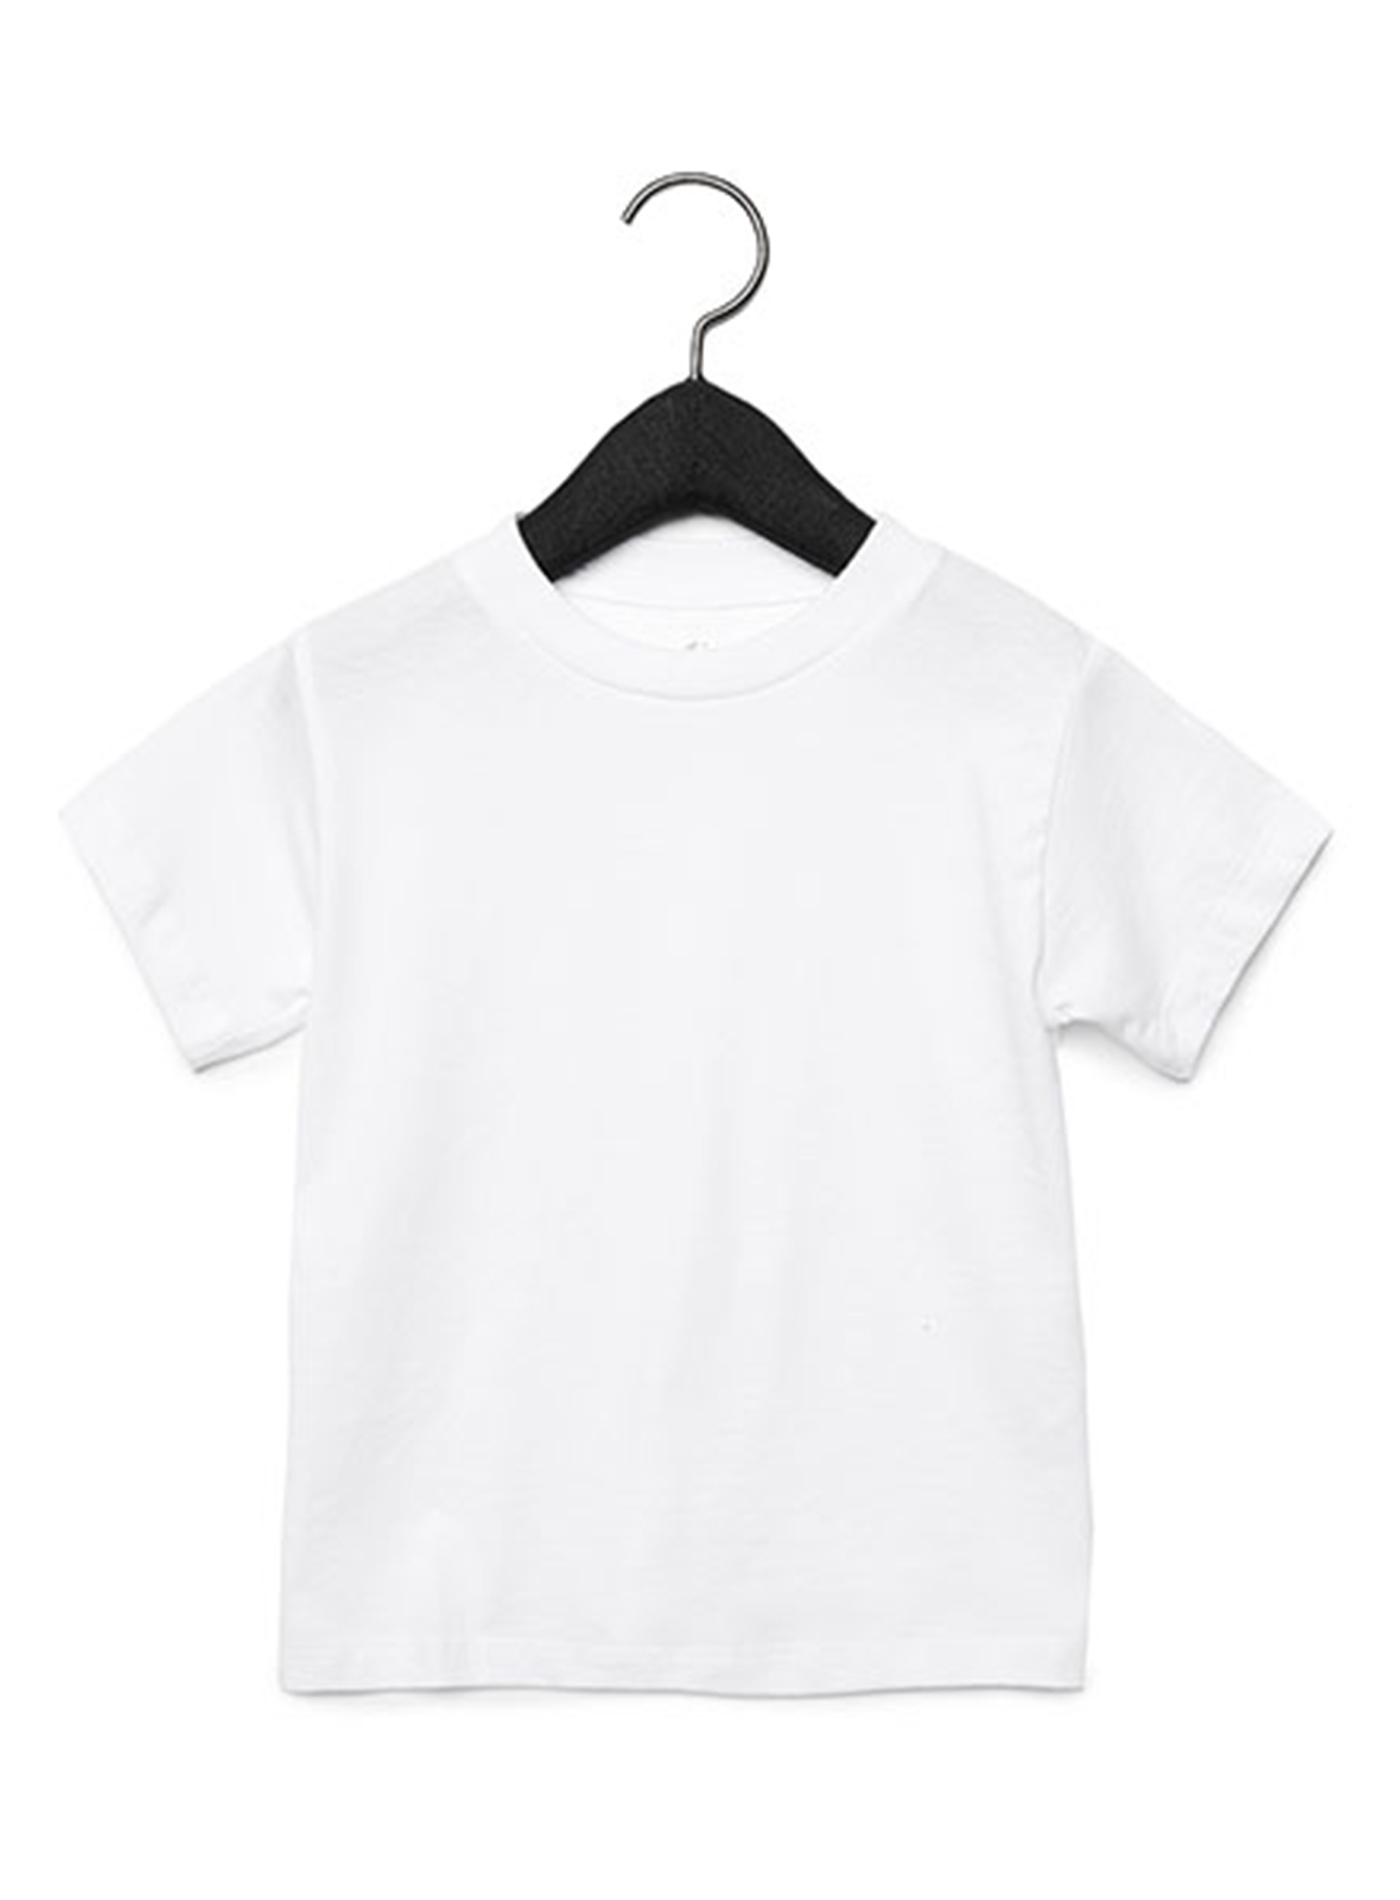 Dětské tričko Jersey - Bílá 2T (92)